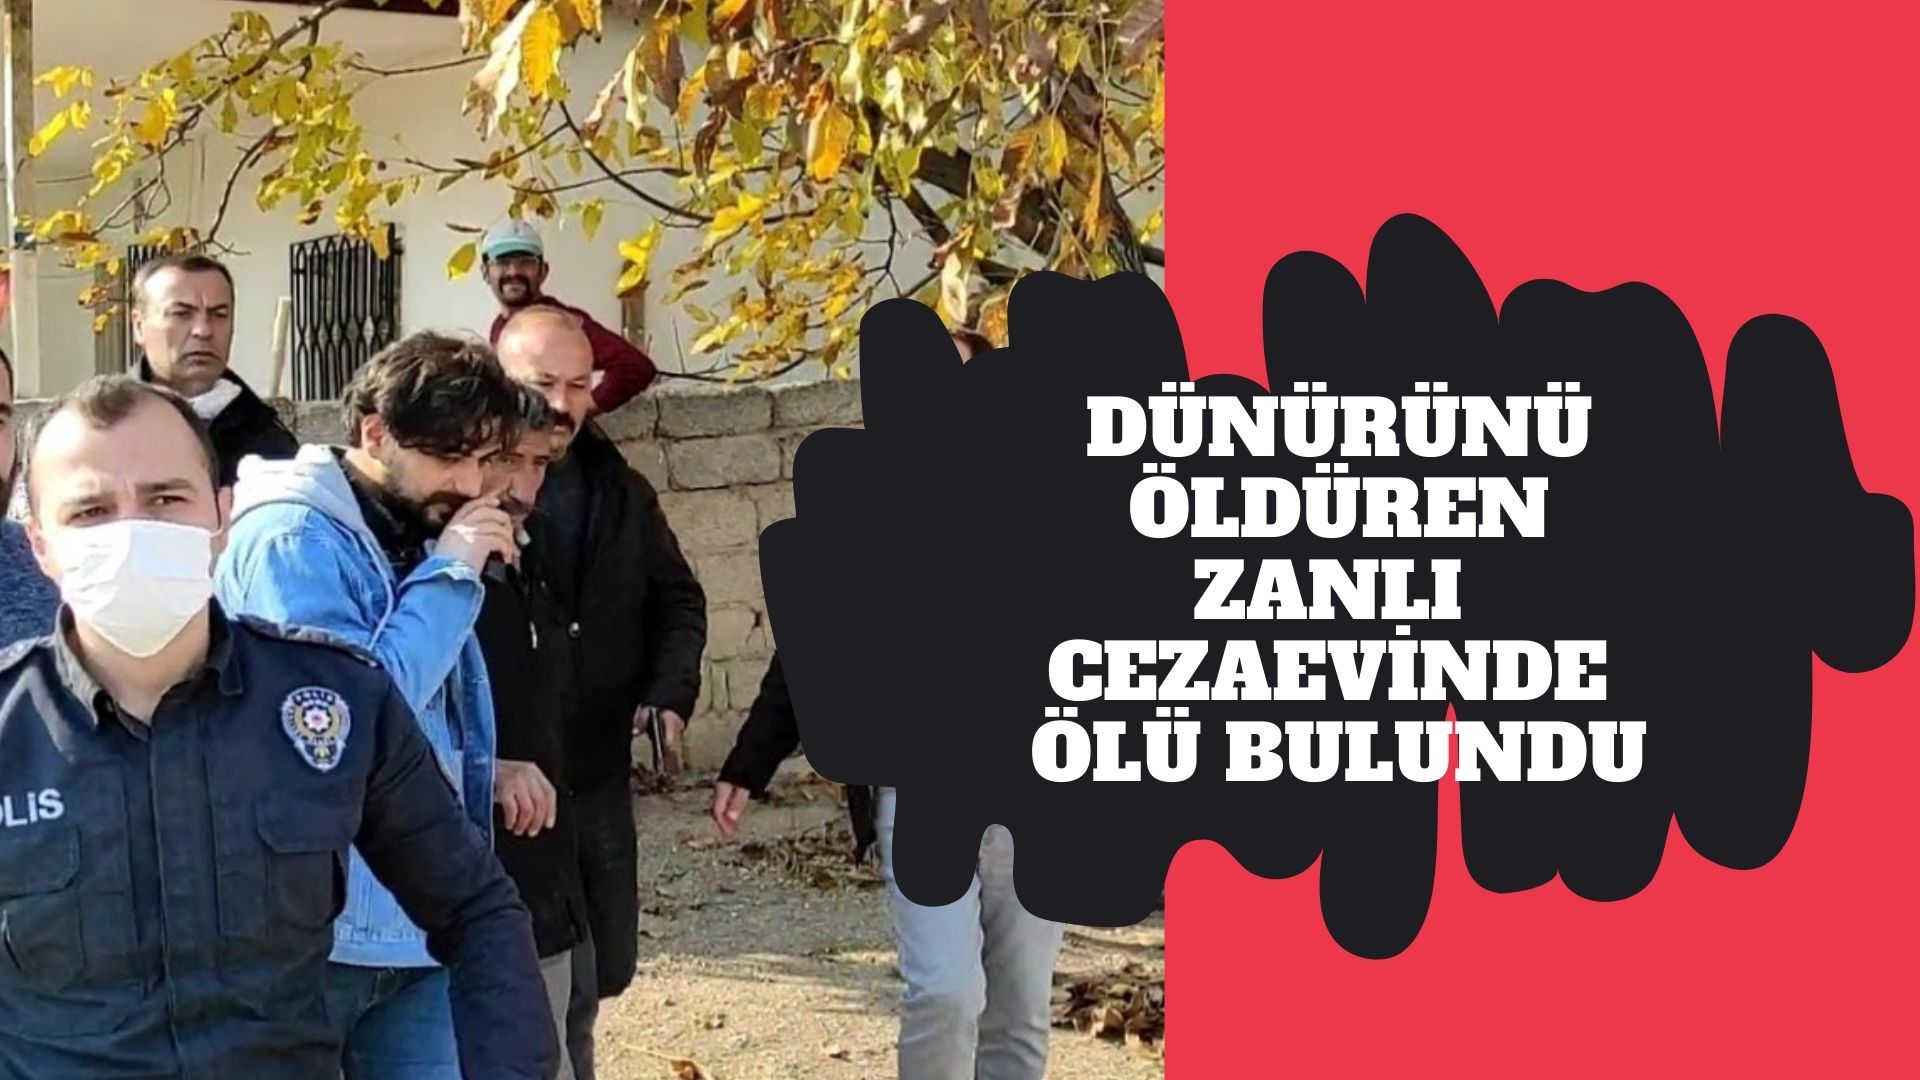 Kırşehir’de dünürünü öldüren zanlı cezaevinde ölü bulundu